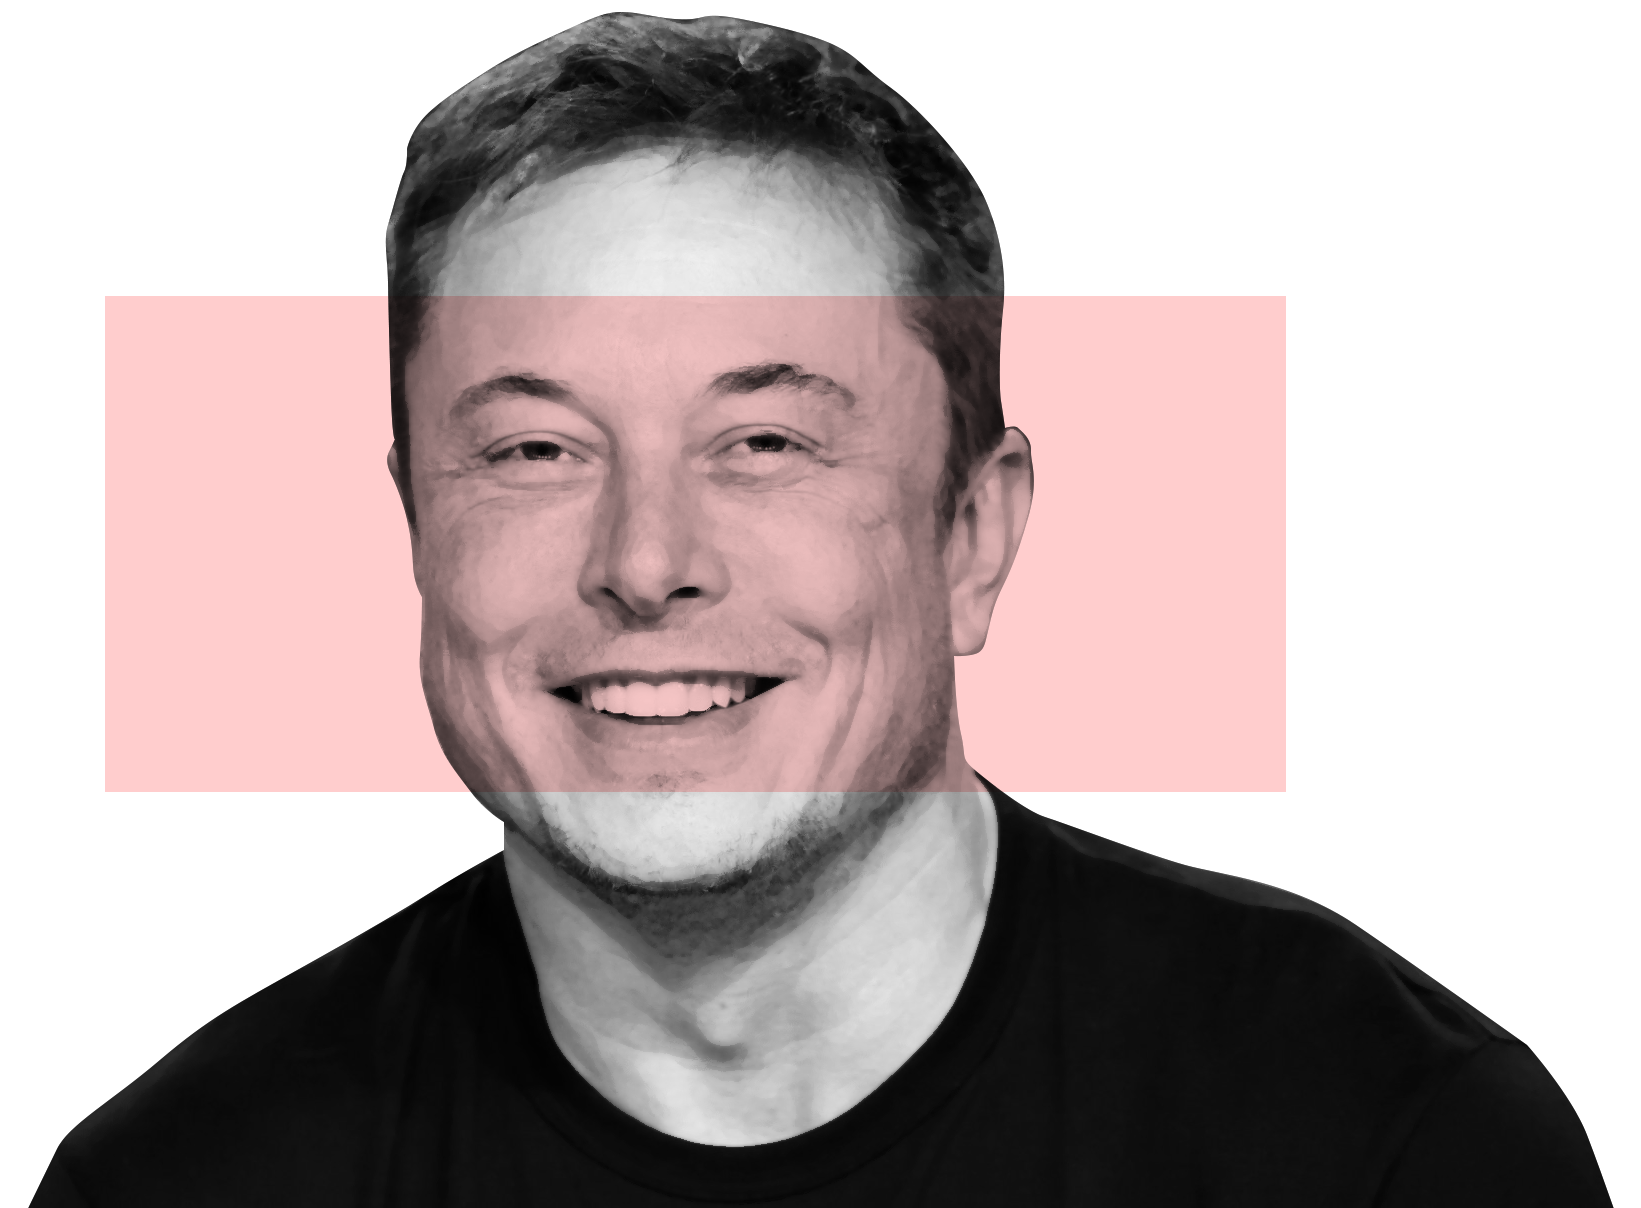 Илон Маск. Маск Илон Маск. Илон Маск лицо. Elon Musk faces.